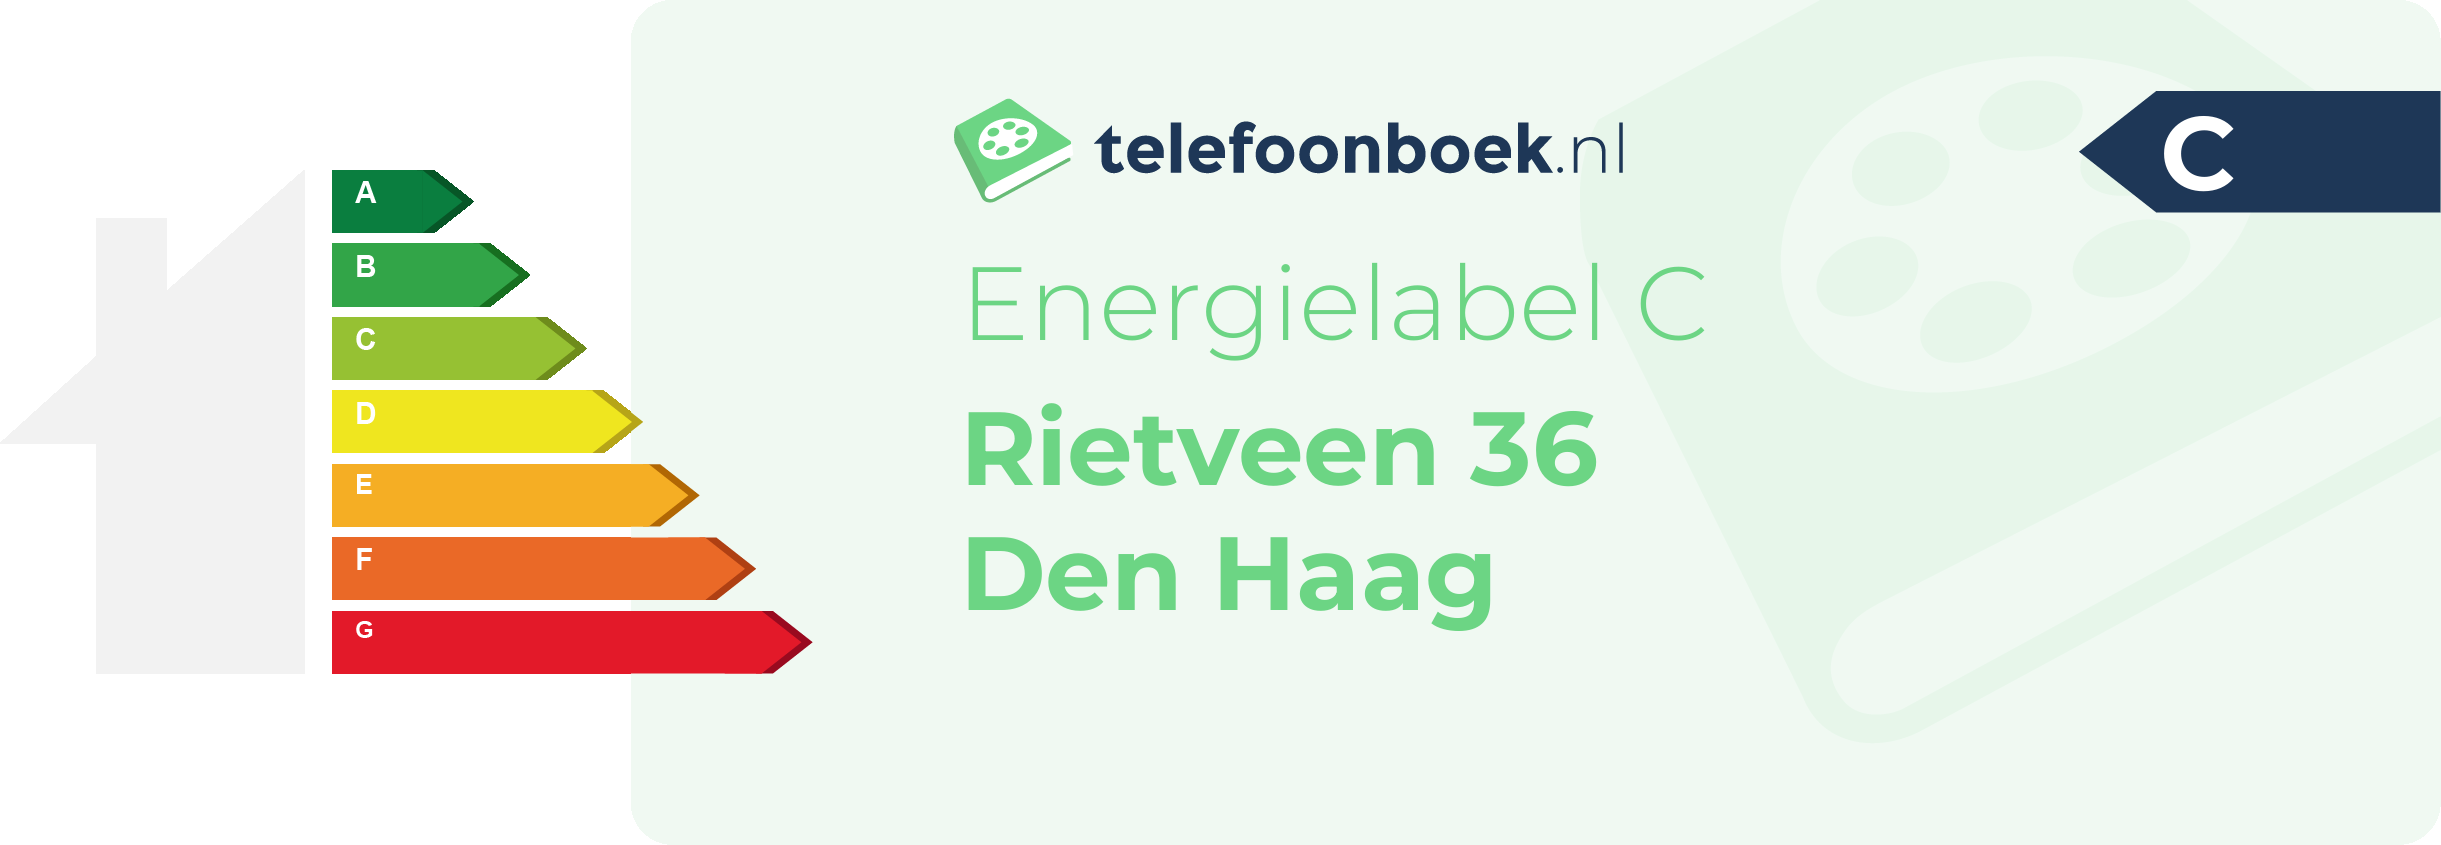 Energielabel Rietveen 36 Den Haag